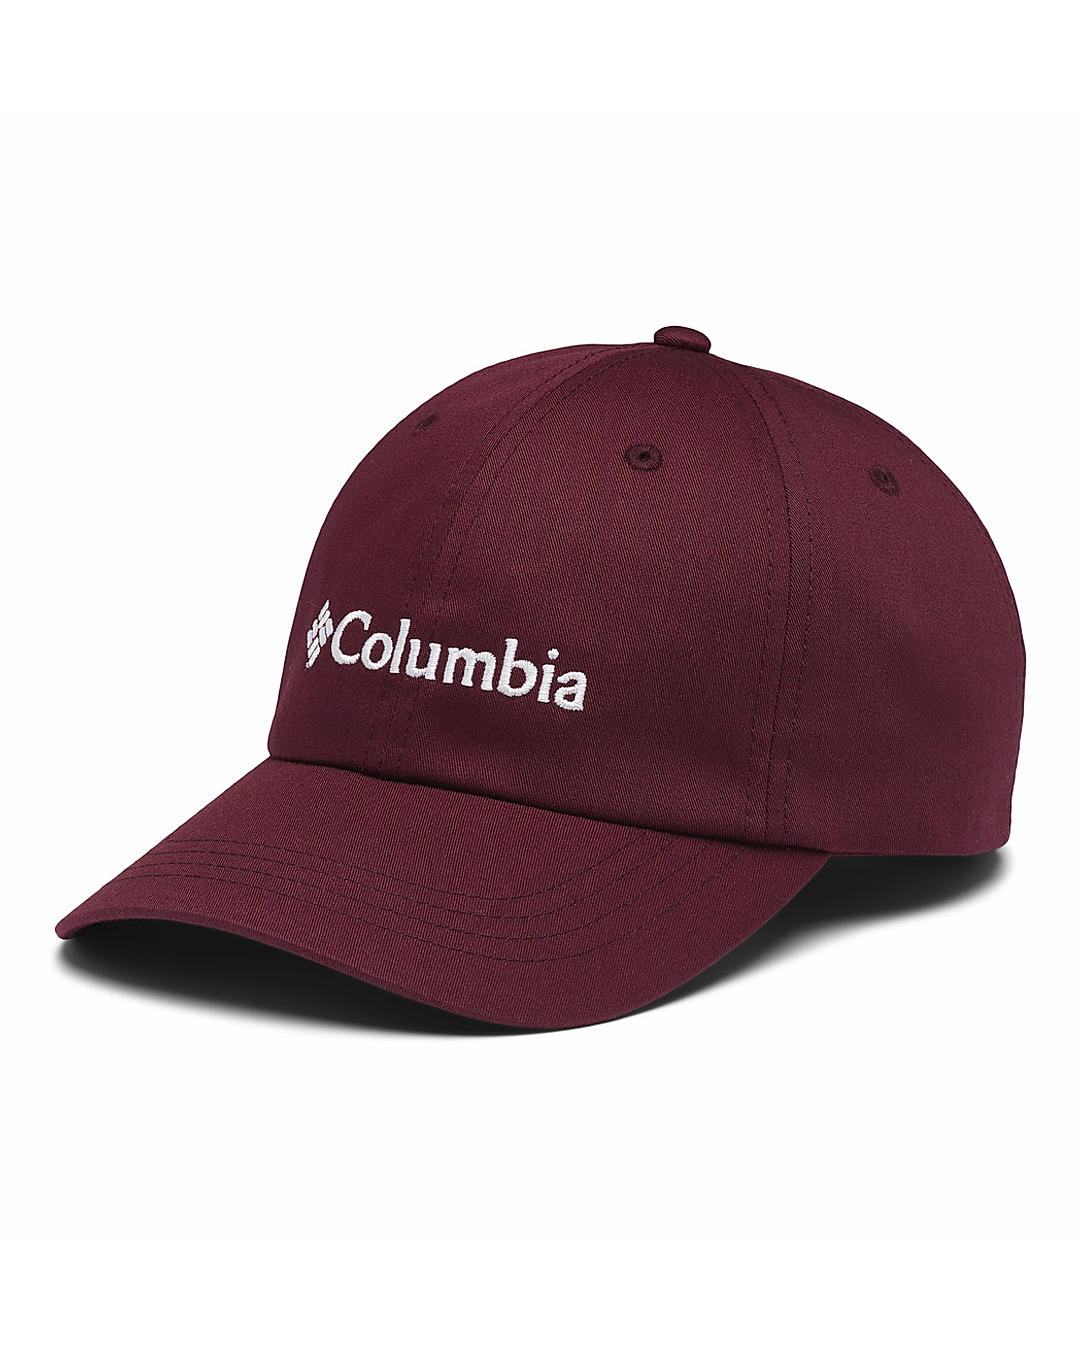 Buy Columbia Purple Roc II Ball Cap For Men and Women Online at